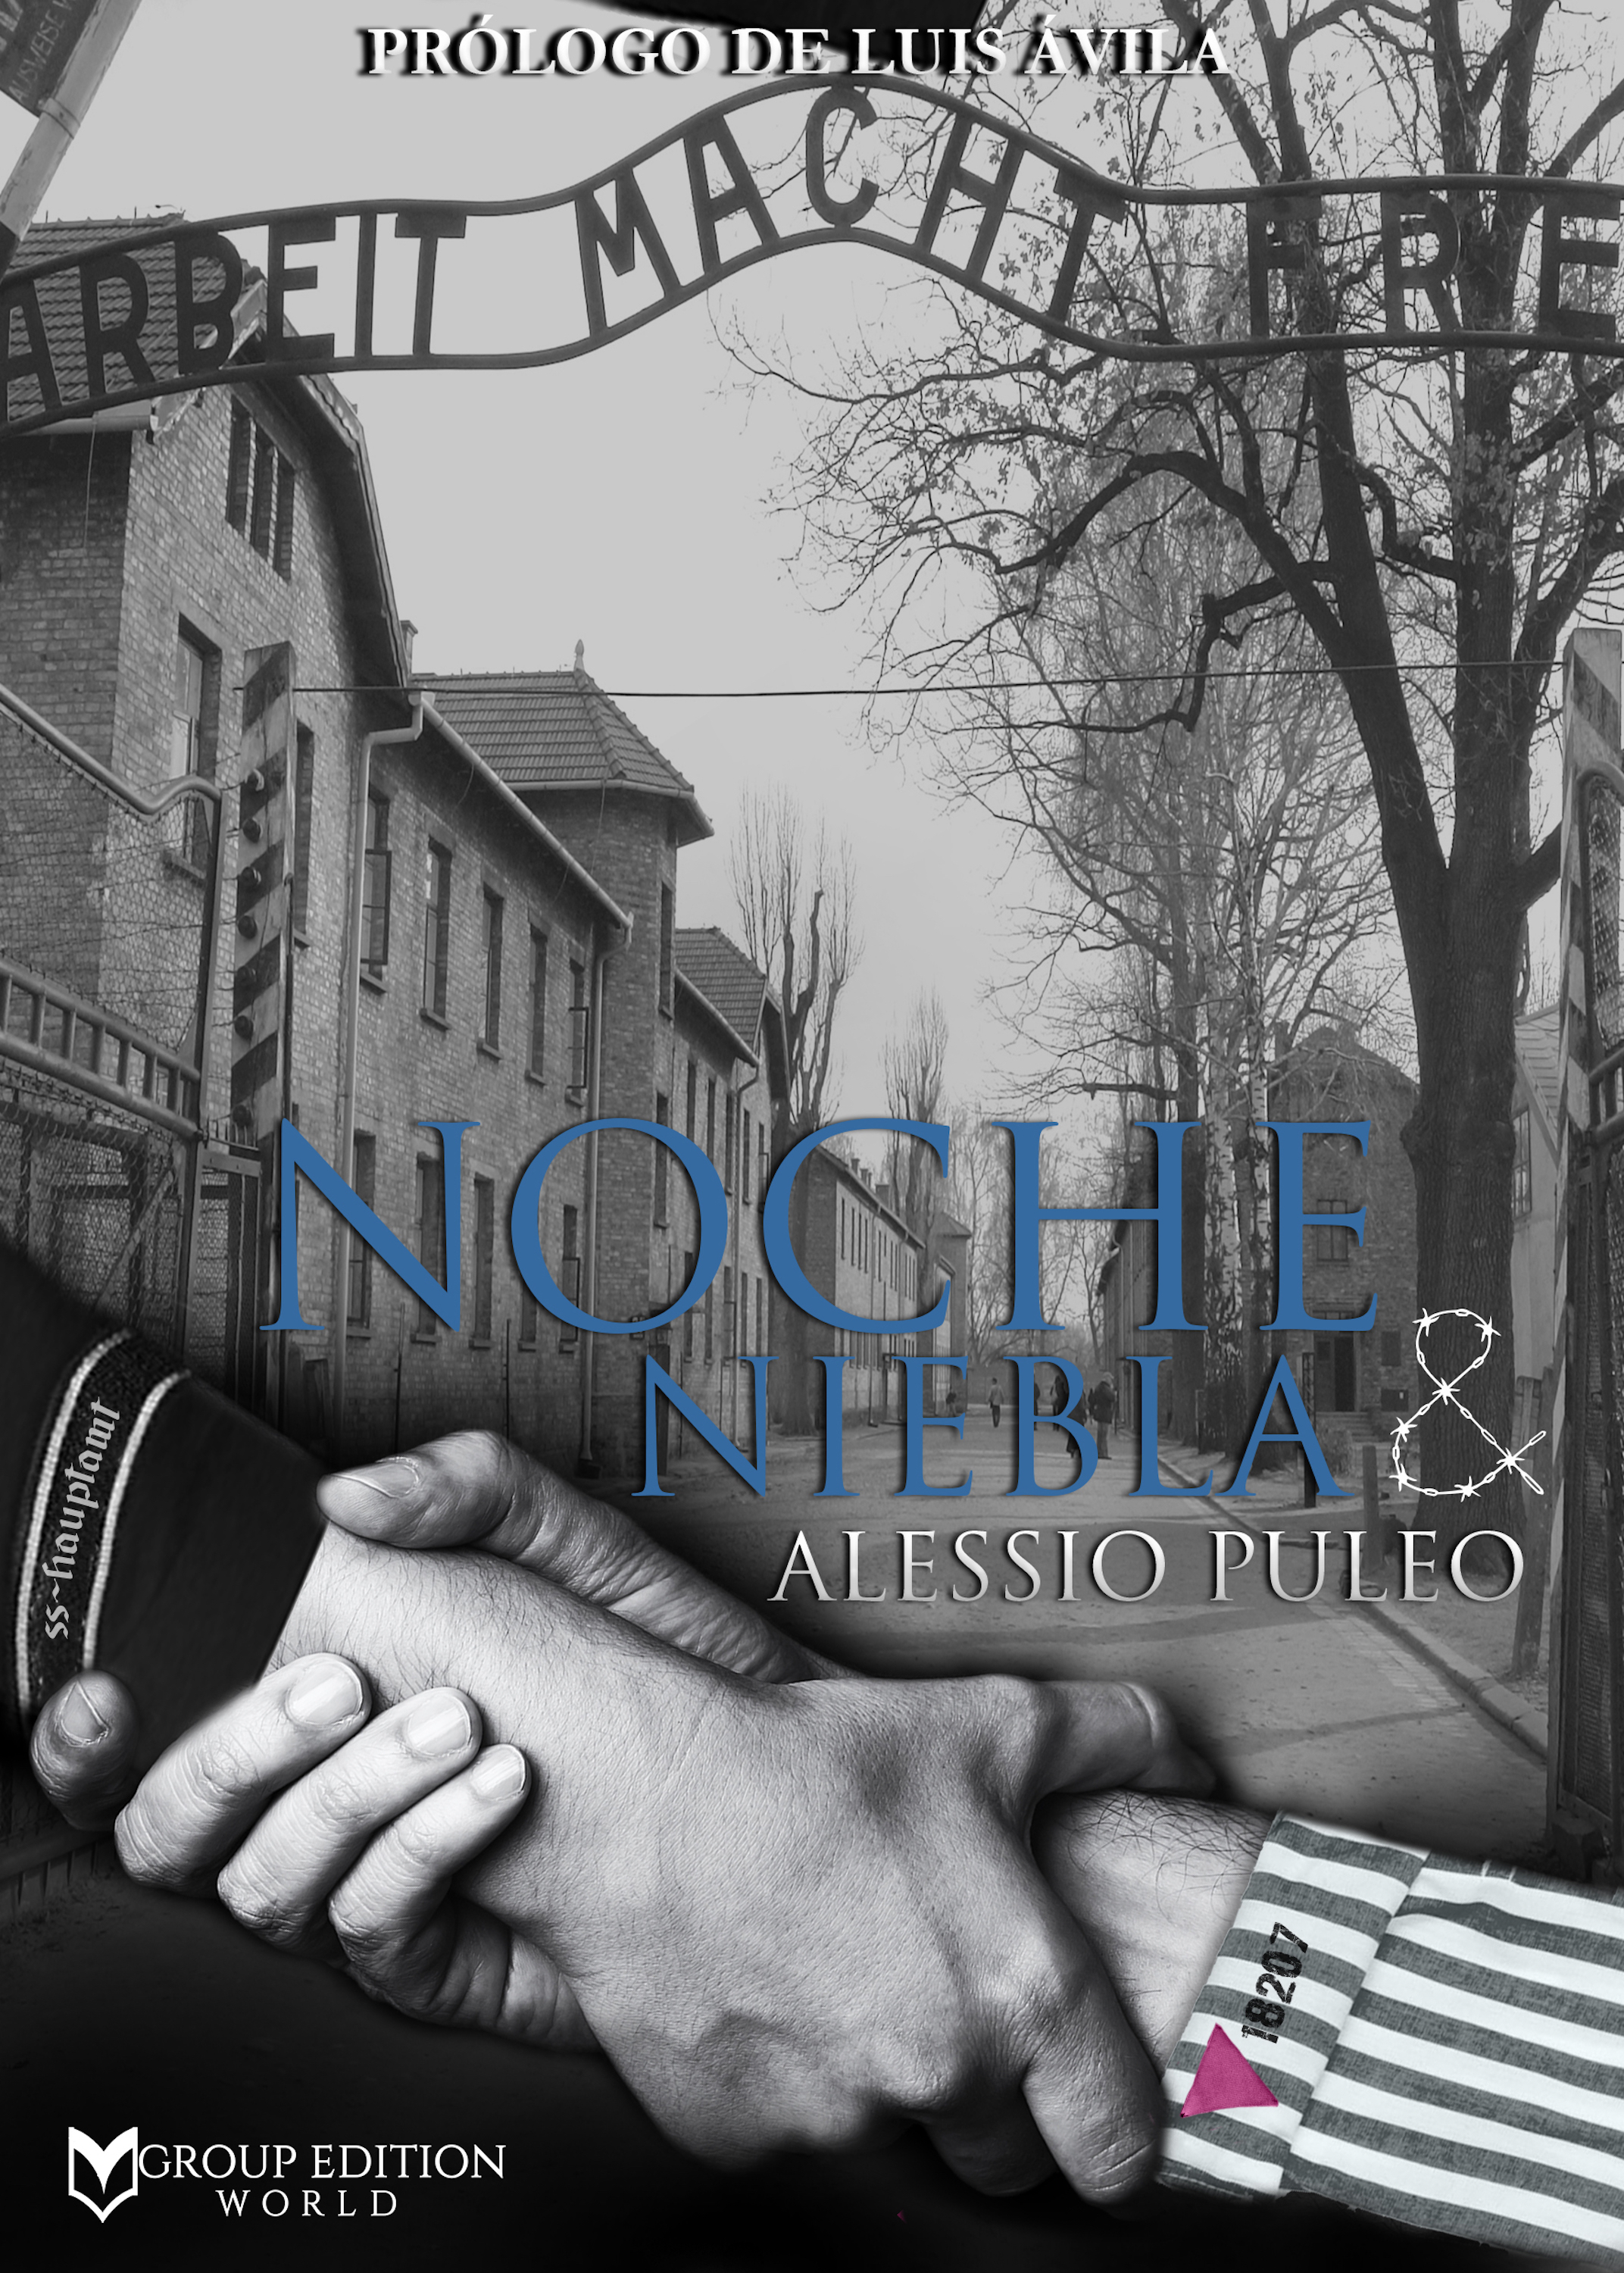 Скачать Noche y niebla - Alessio Puleo